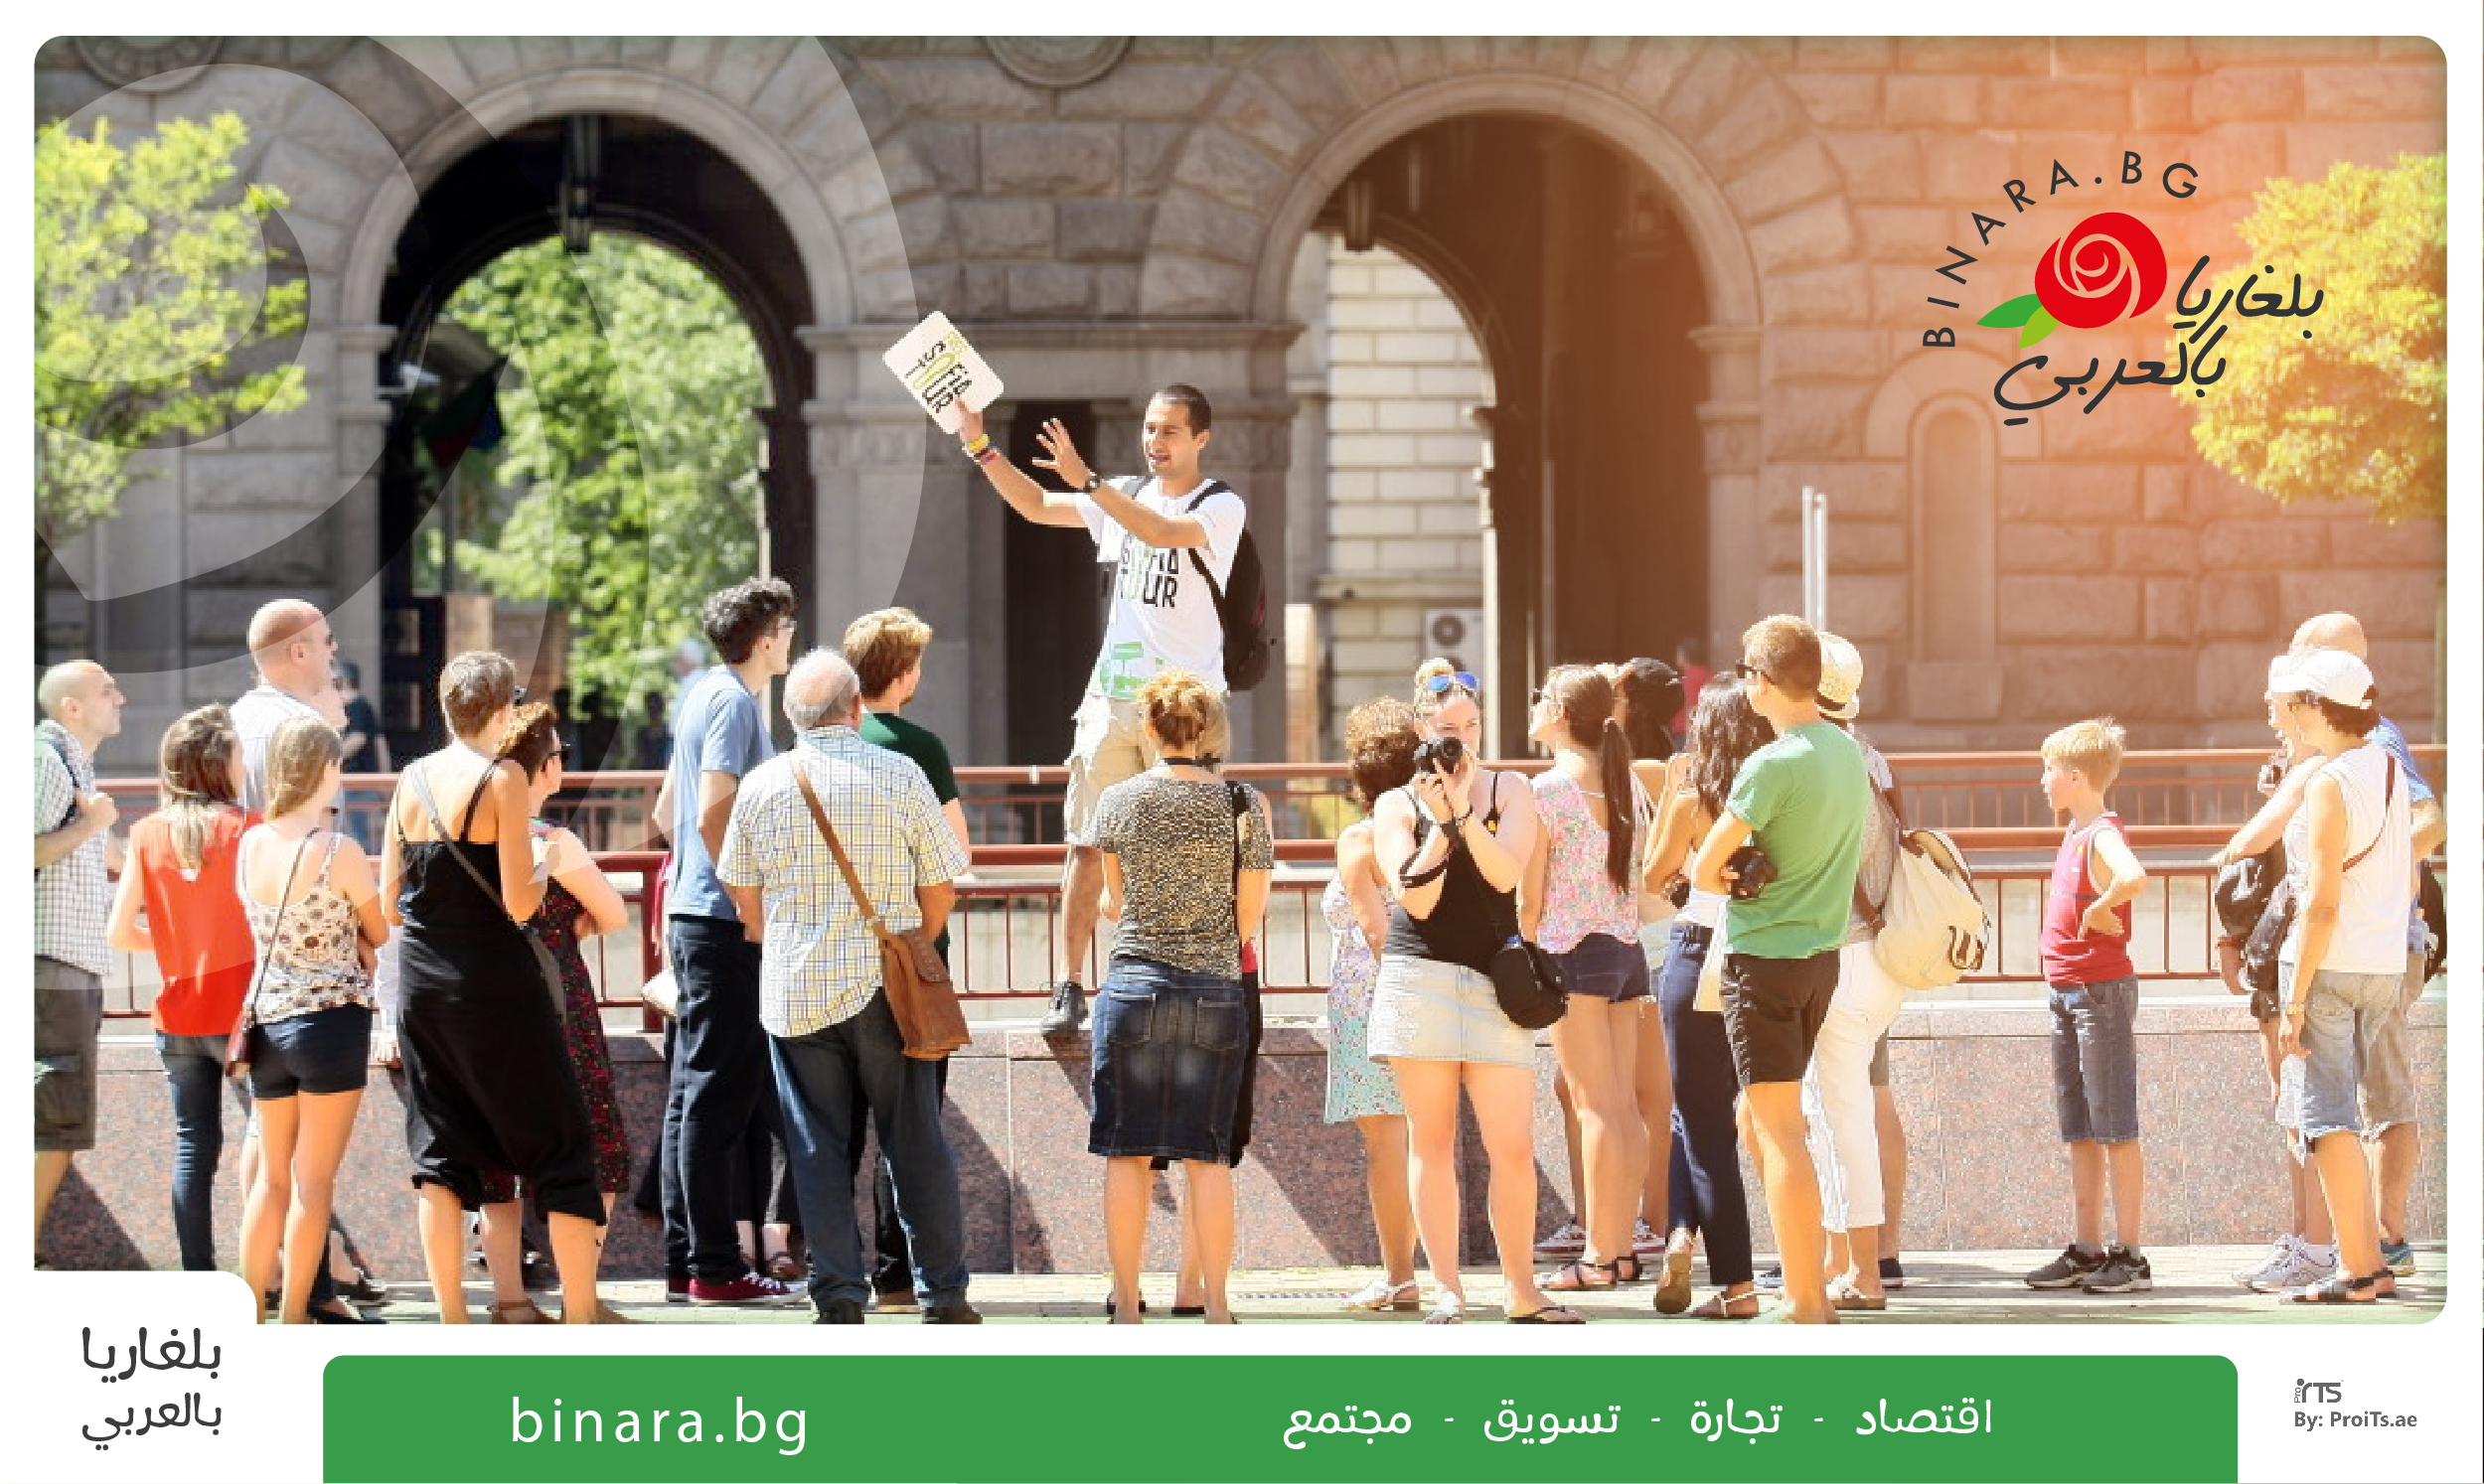 بلغ نمو السياح الأجانب في بلغاريا ما يقارب 40٪ في سبتمبر هذا العام -  بلغاريا بالعربي